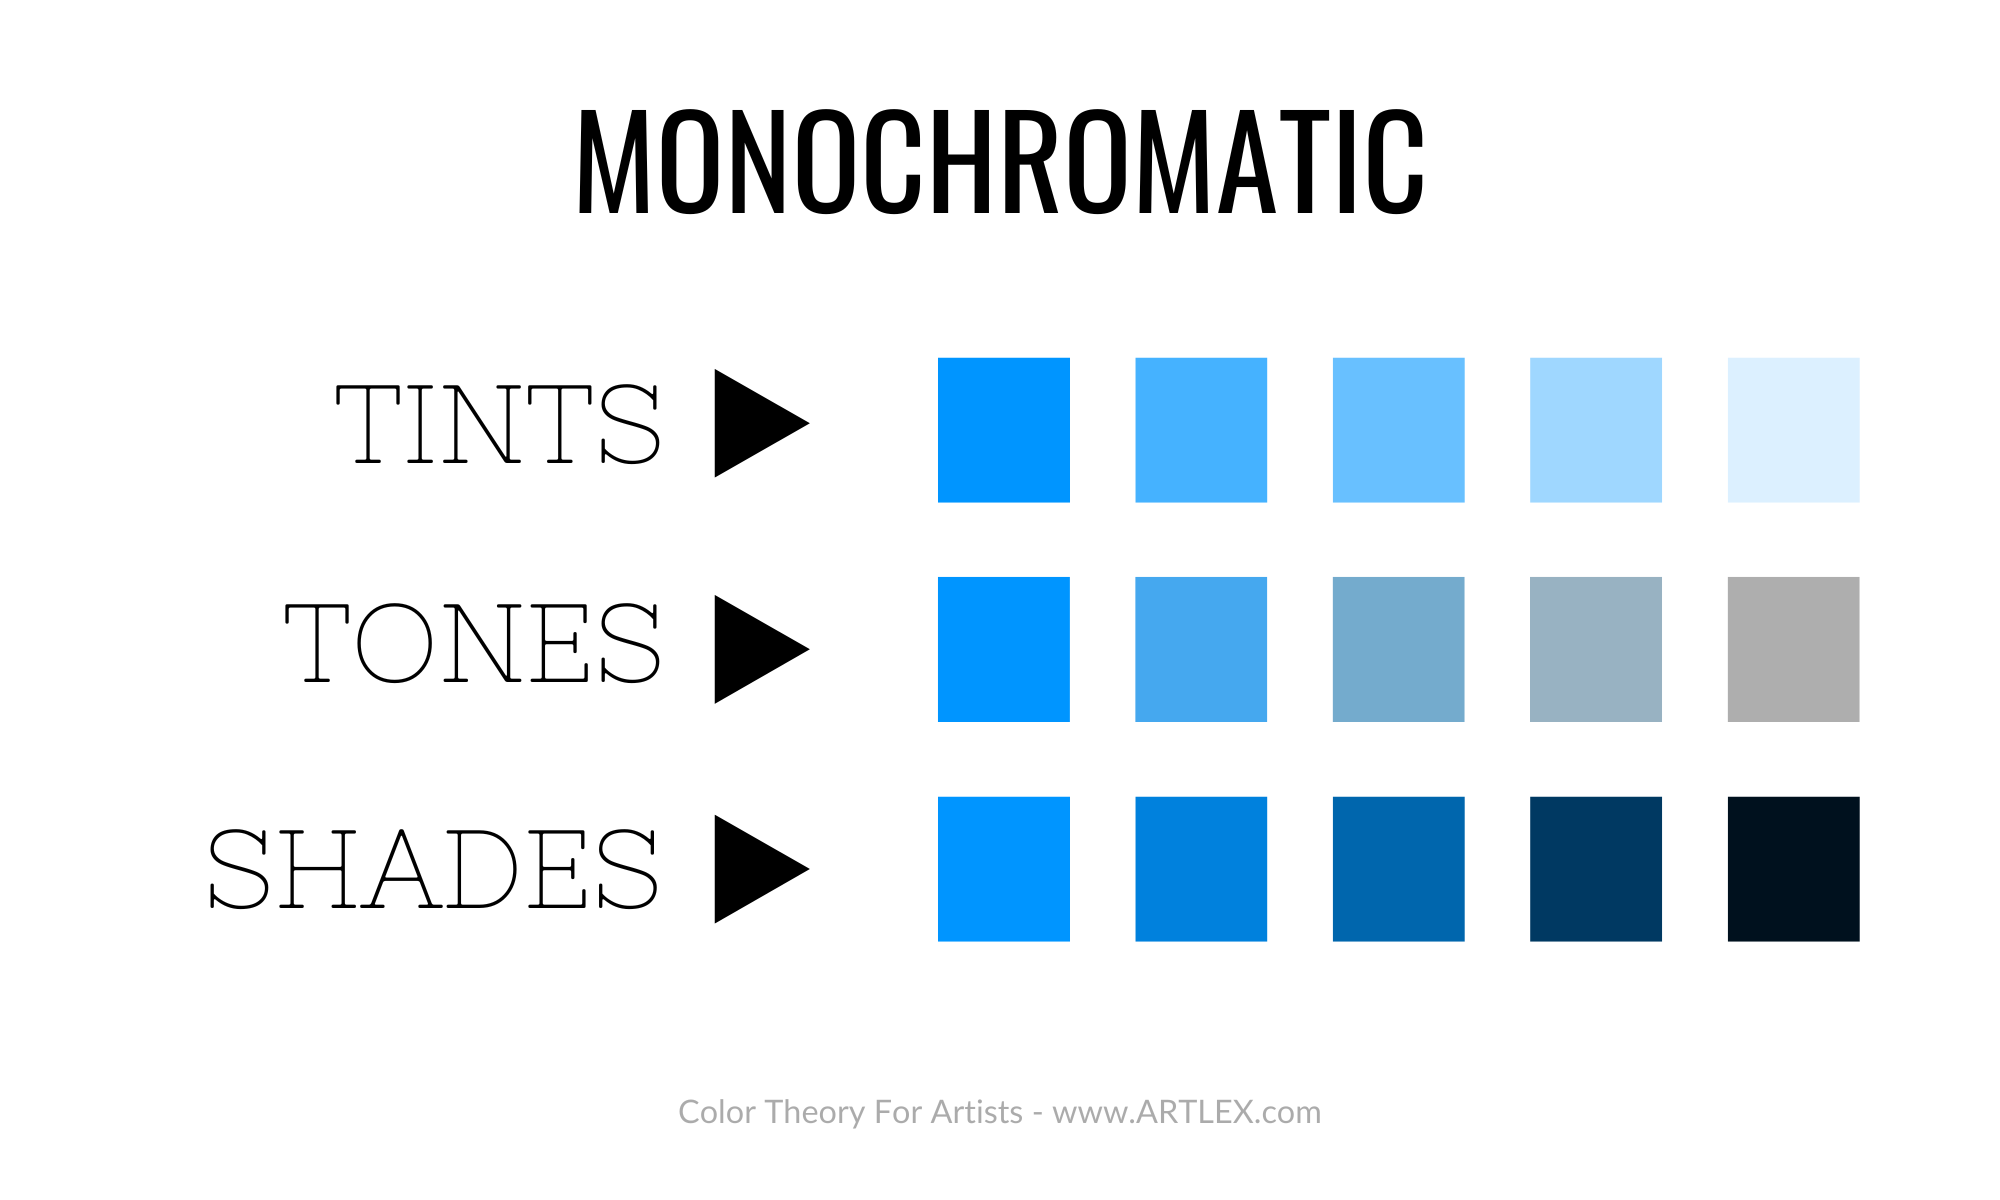 Tints vs. Tones vs. Shades